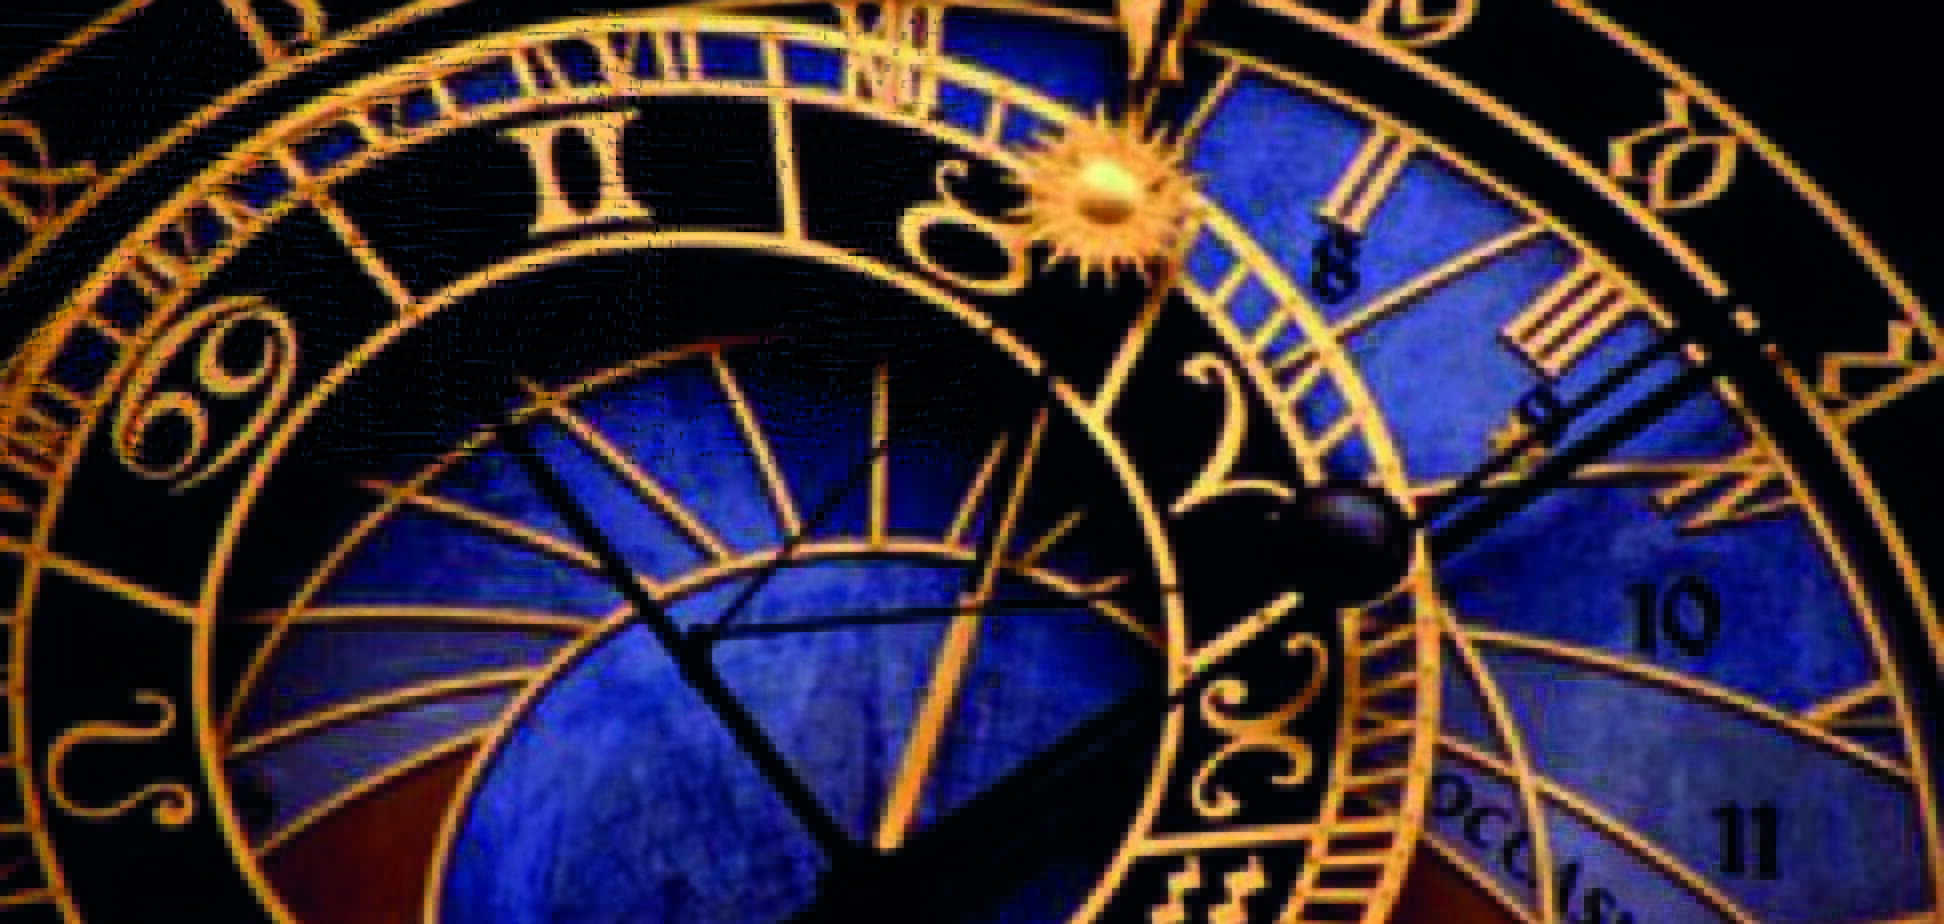 Что ждет Украину: прогноз астрологов на 2015 год